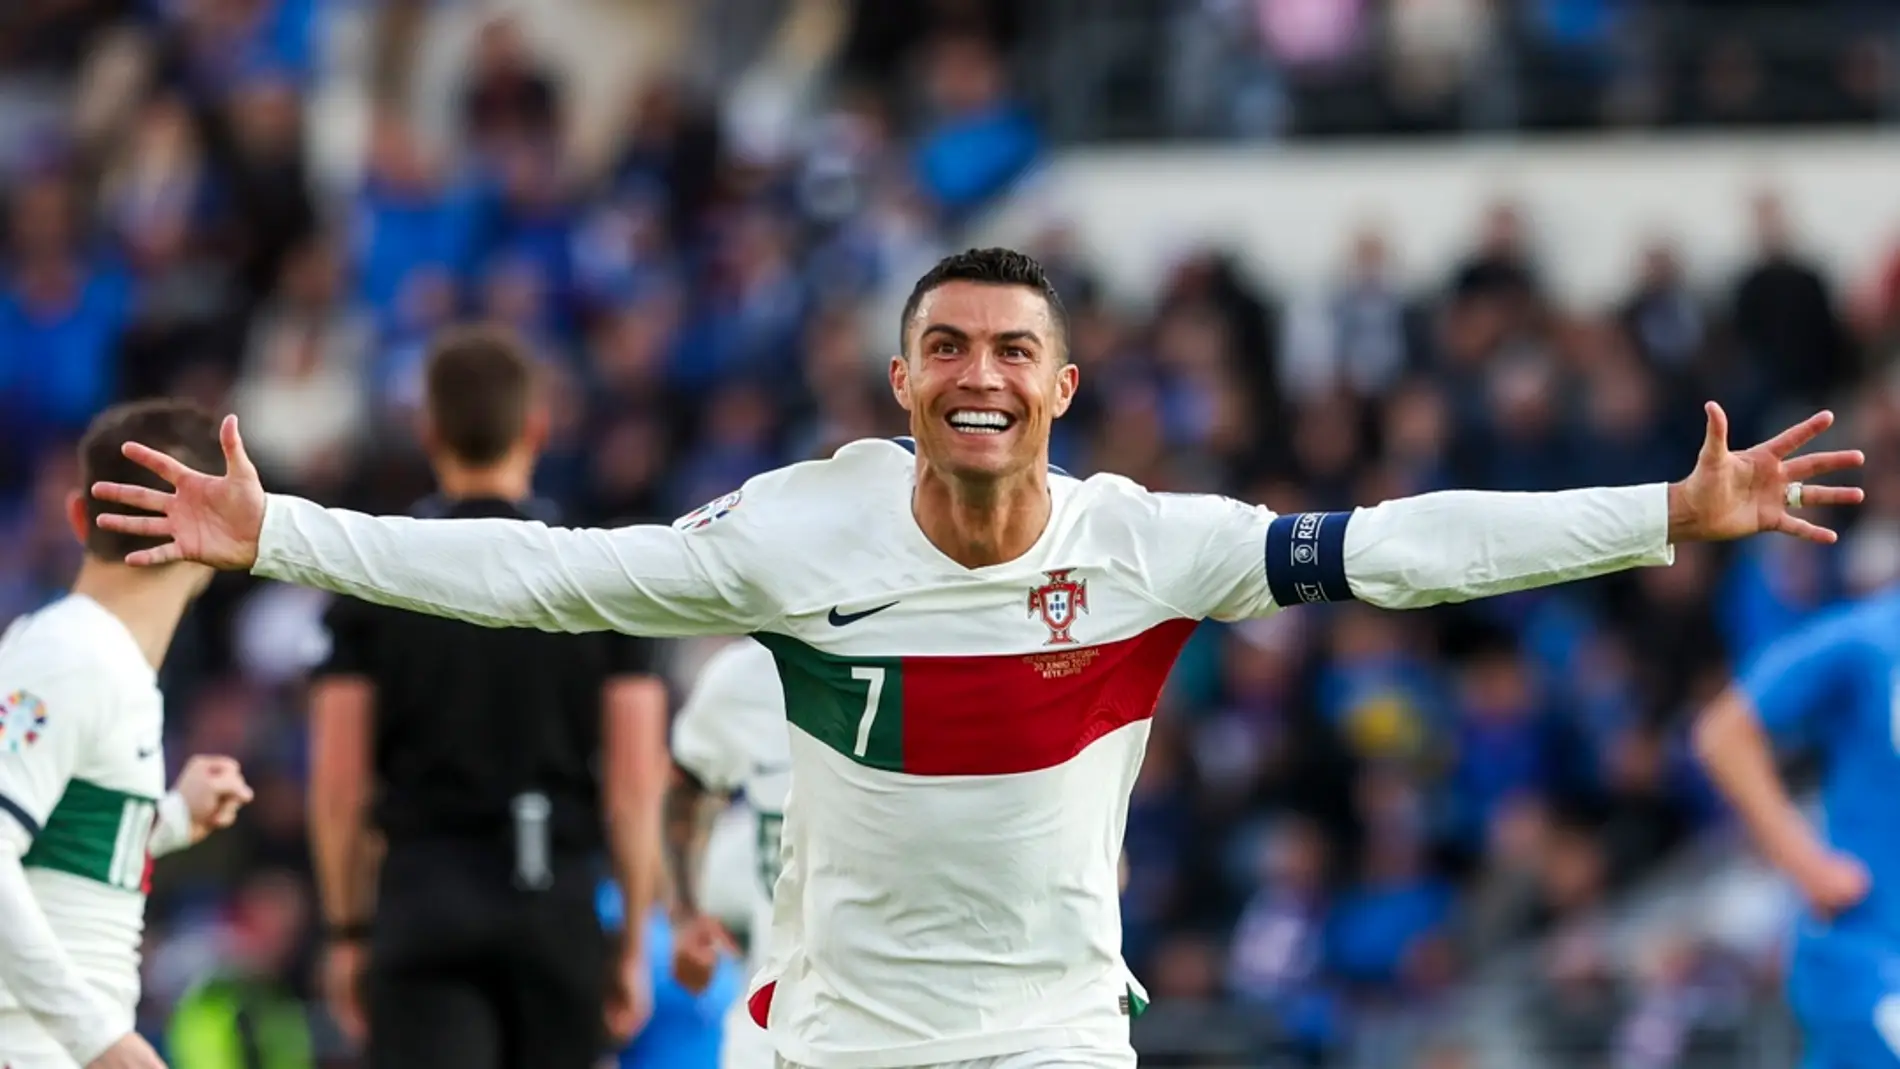 Cristiano Ronaldo logra un nuevo hito: 200 partidos con Portugal